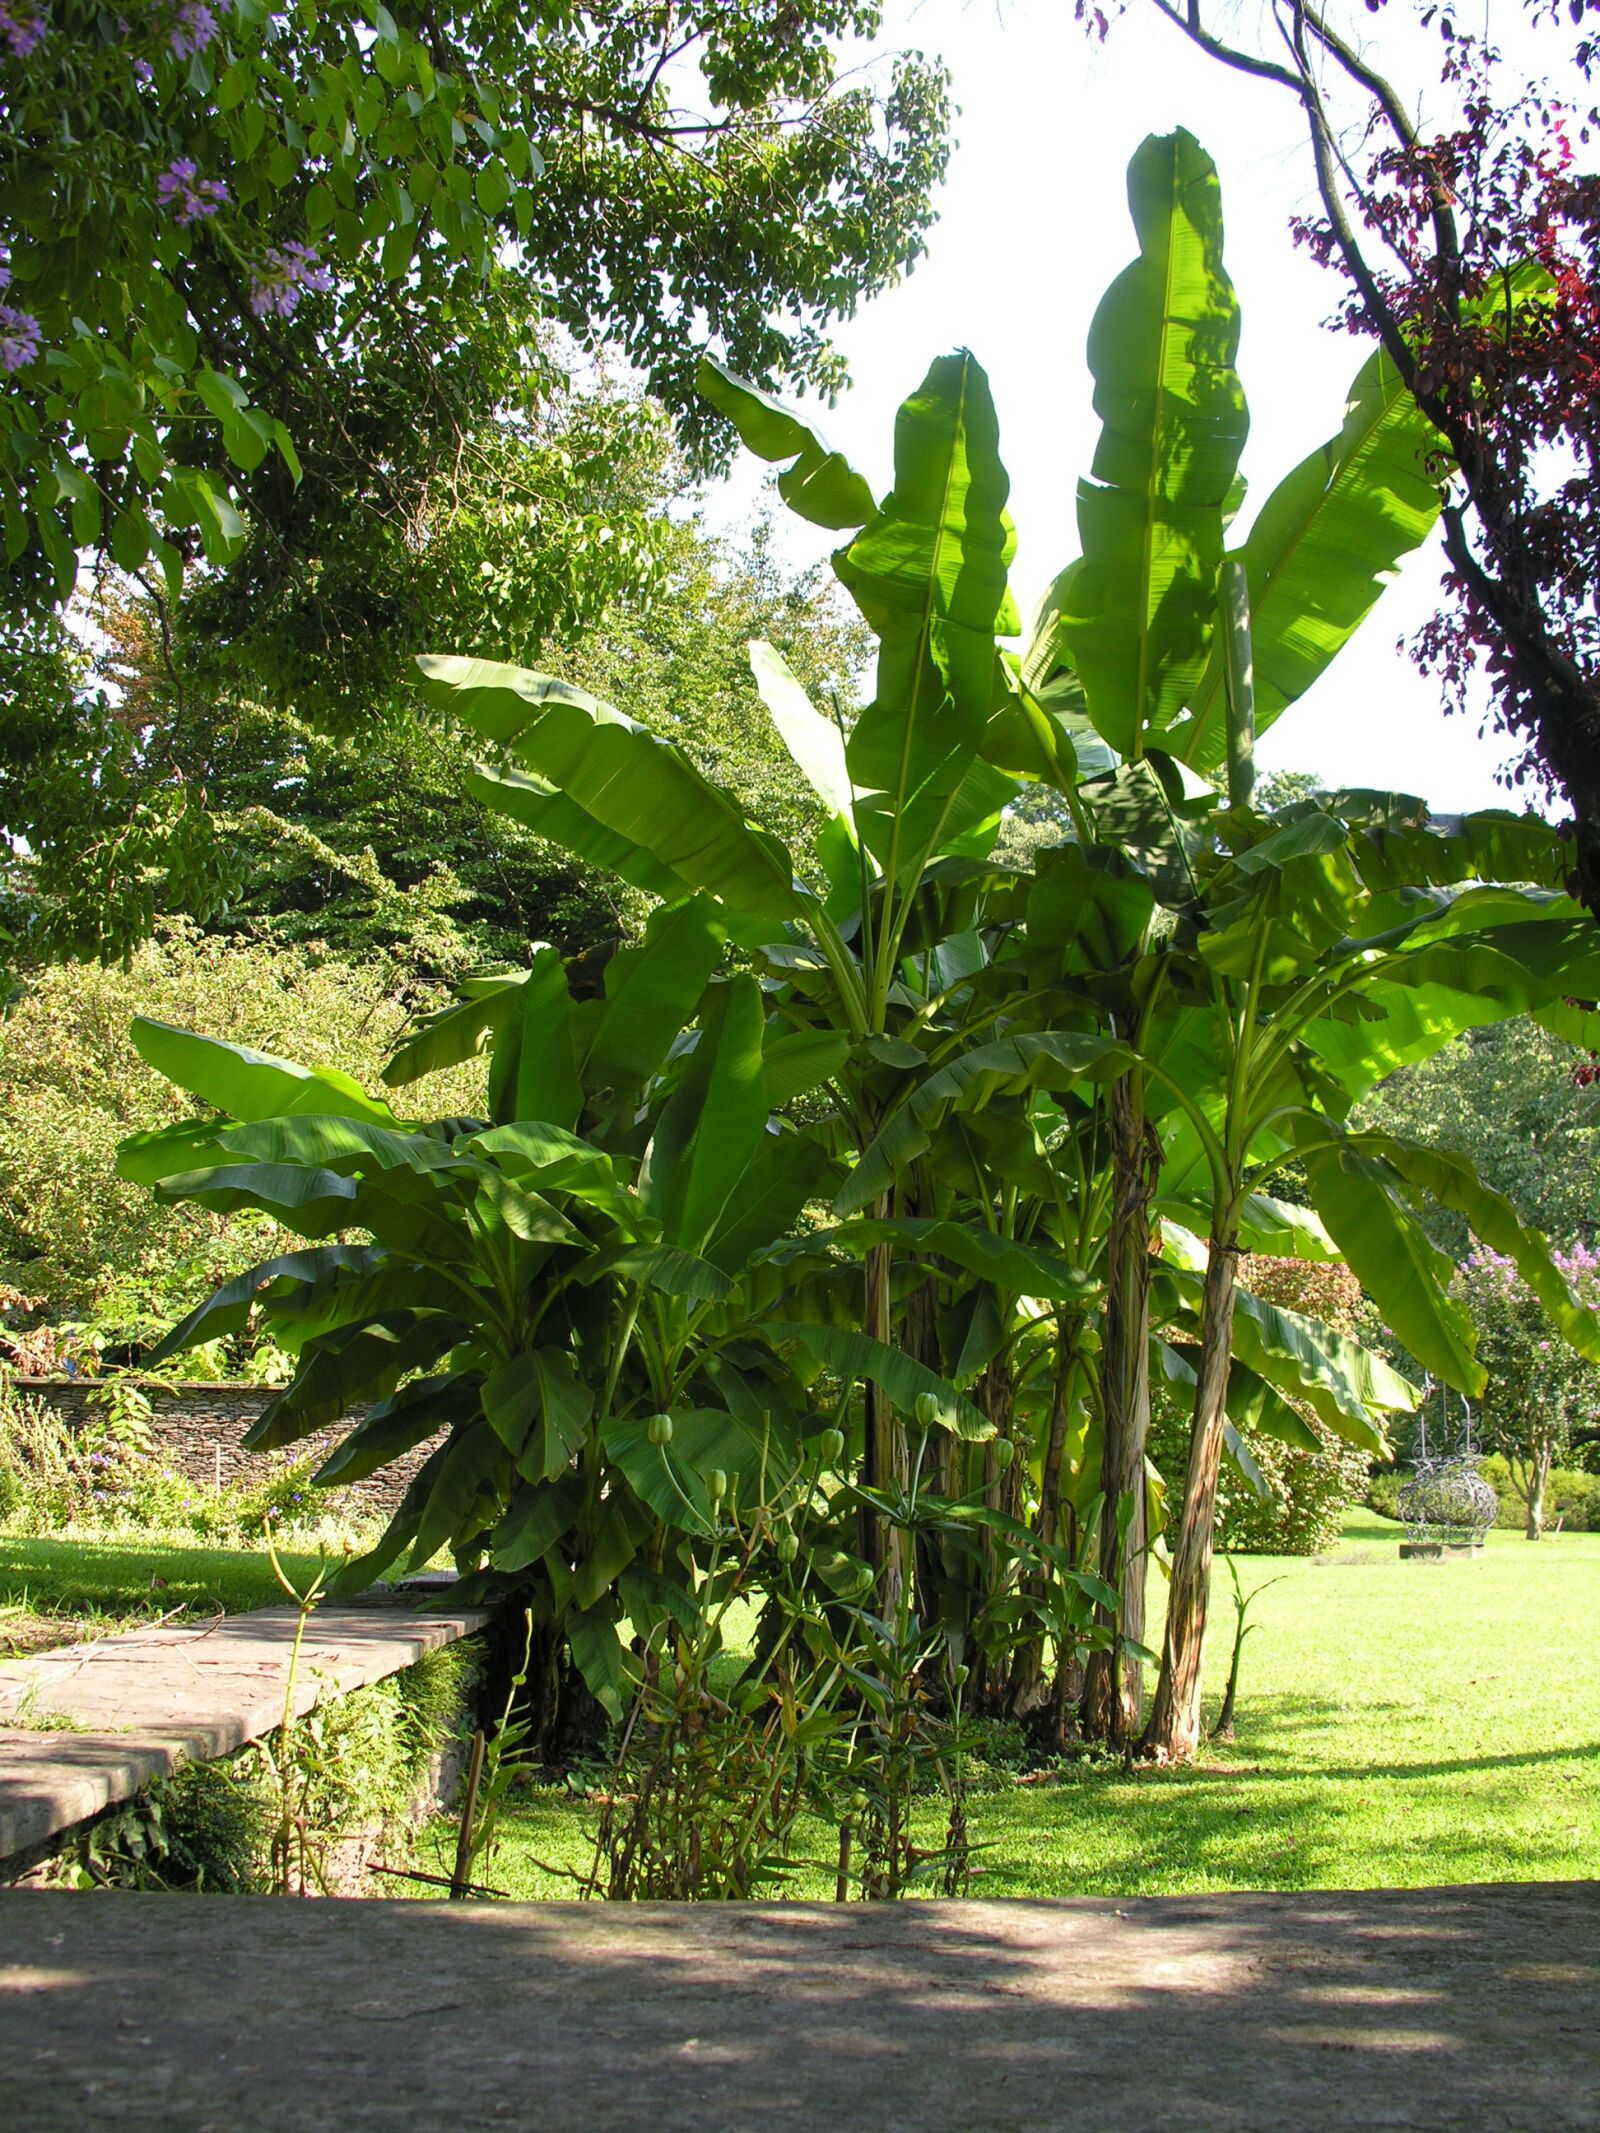 Nikon E8800 sample photo. Banana trees, villa taranto photography